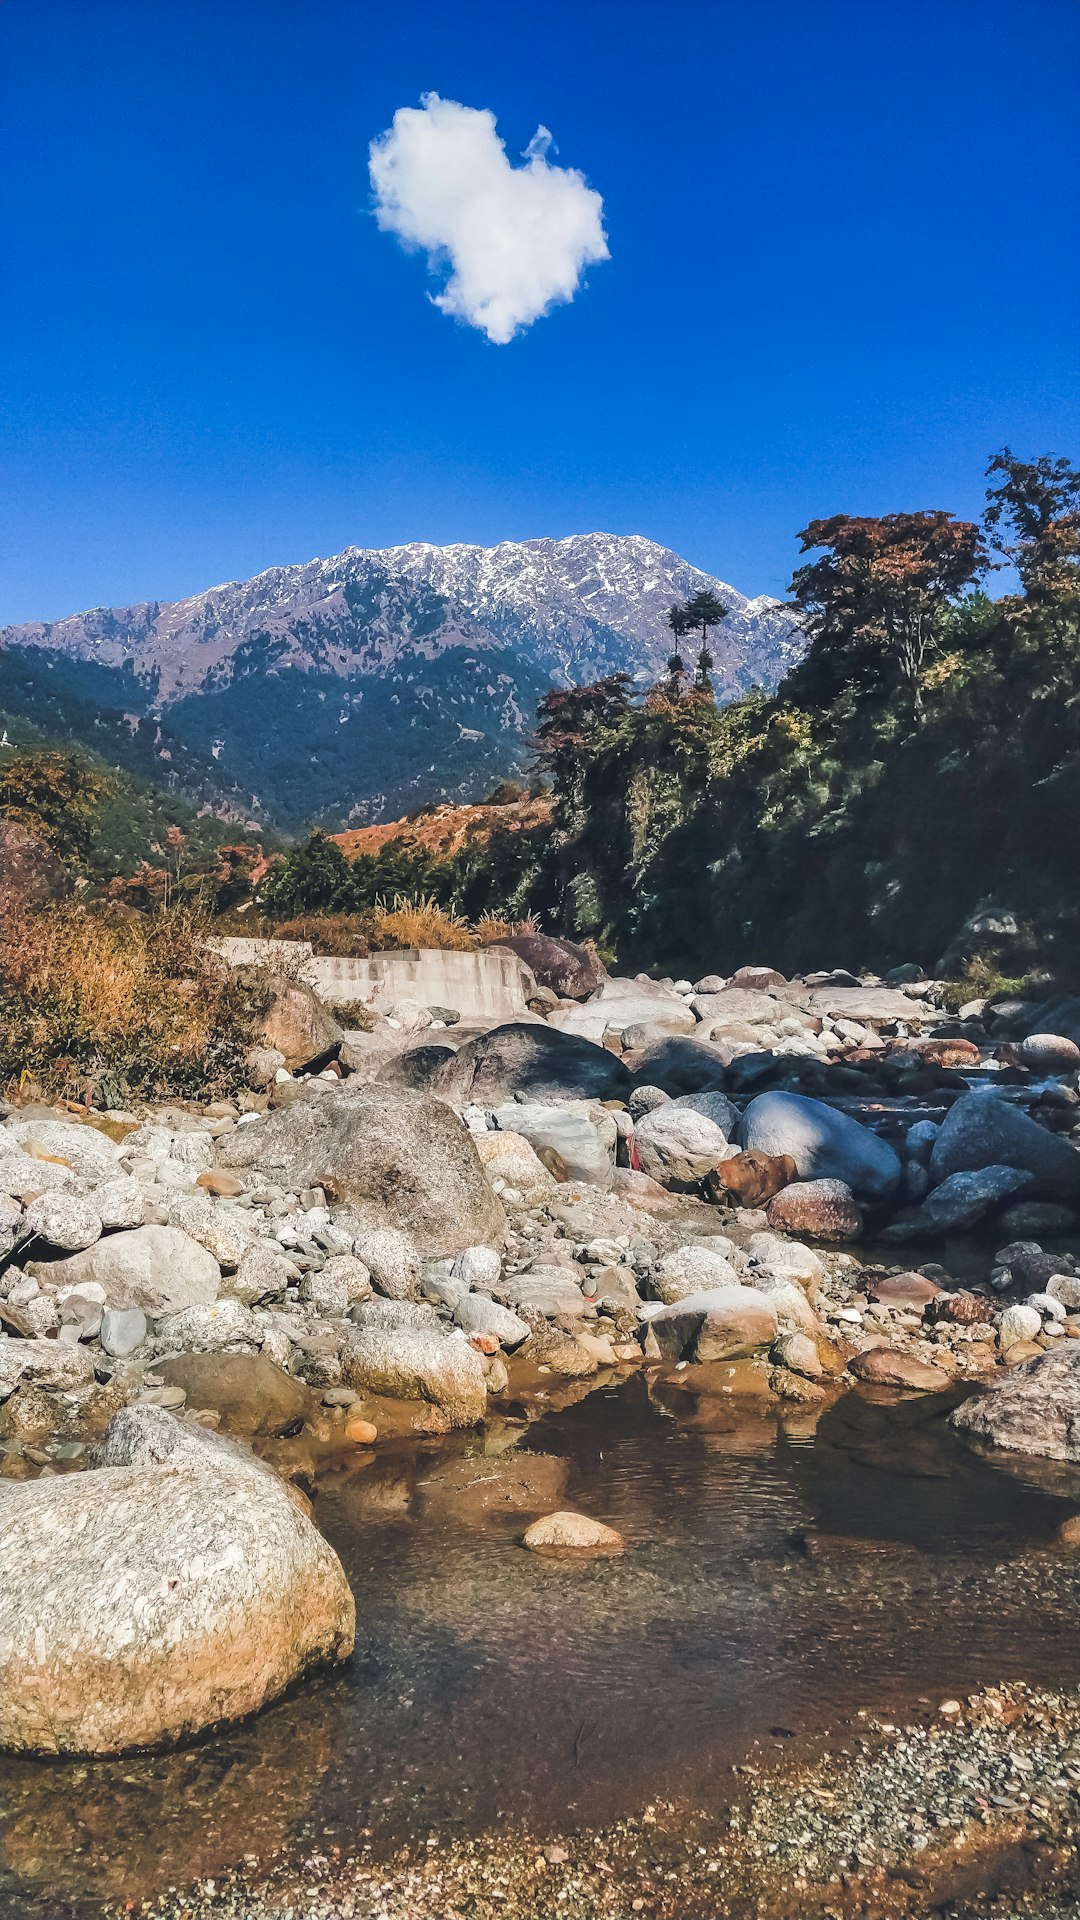 Nature reserve photo spot Himachal Pradesh Kullu